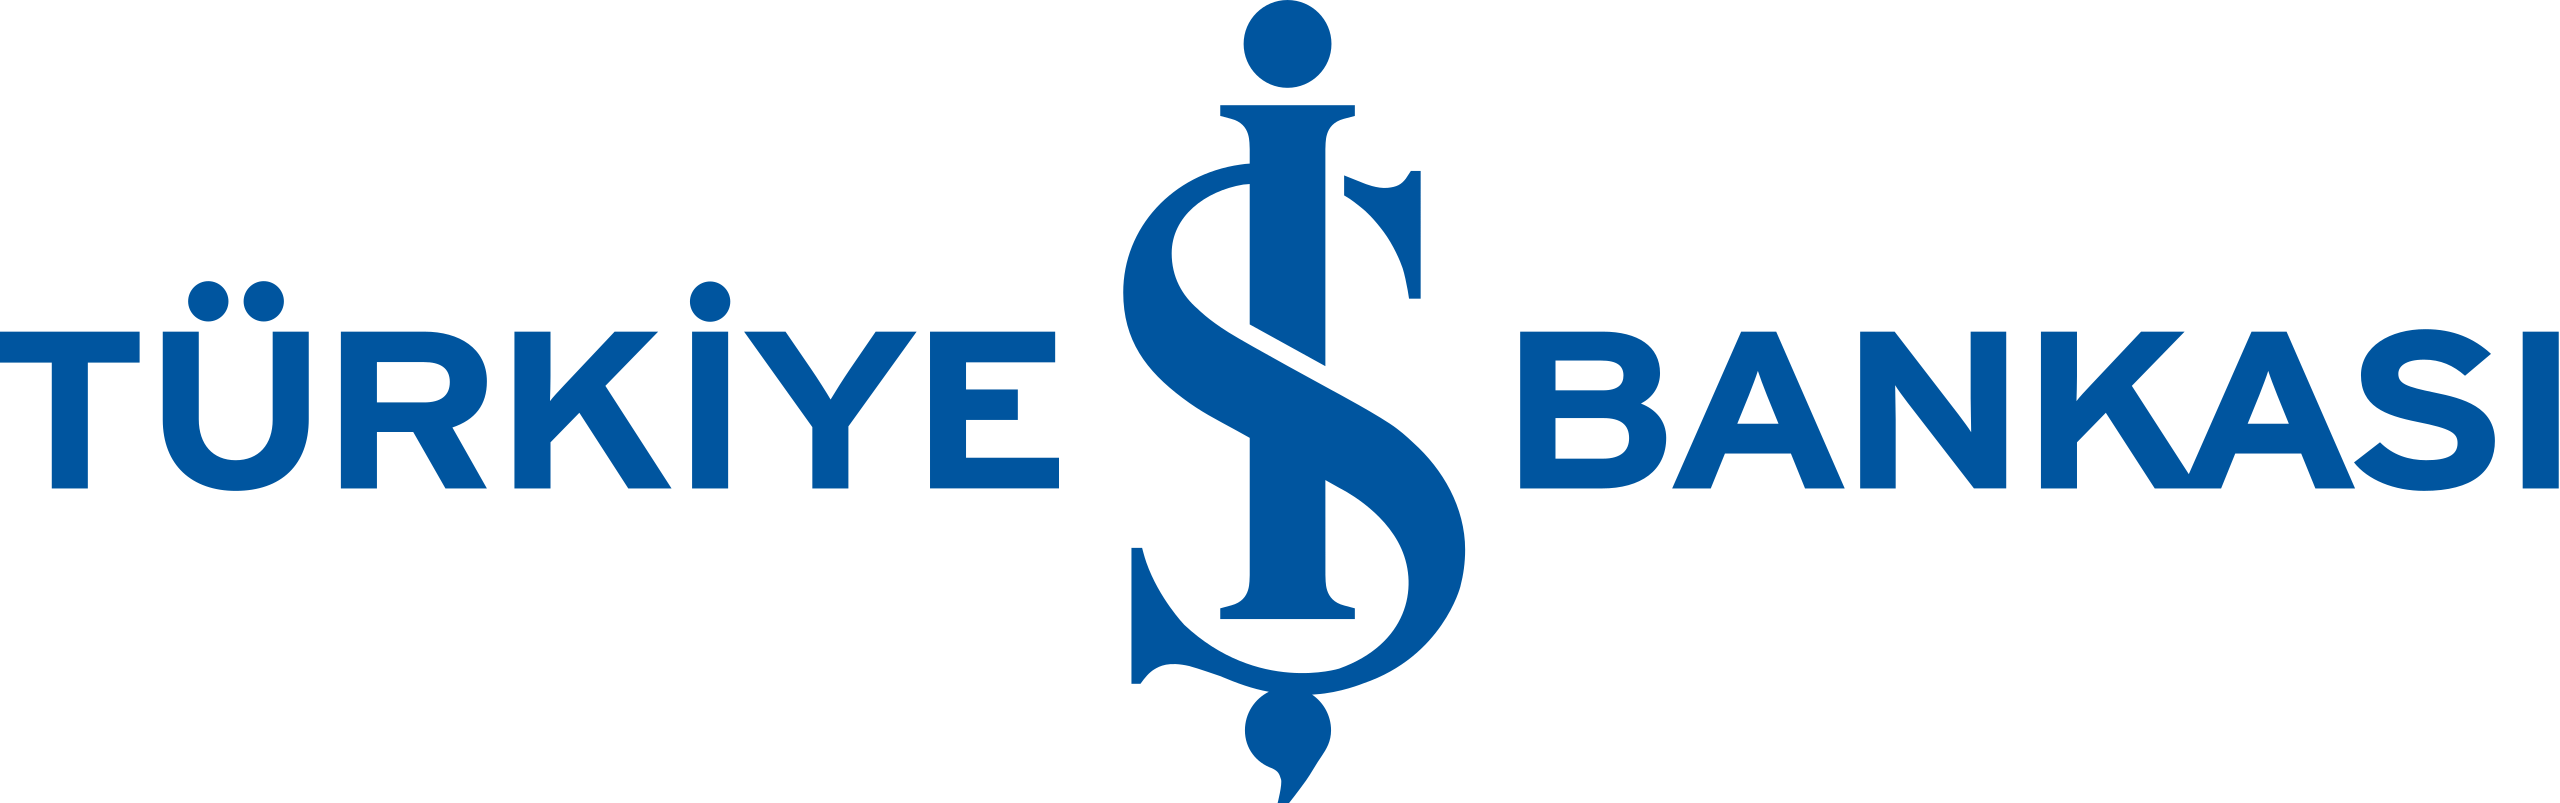 Türkiye_İş_Bankası_logo.svg